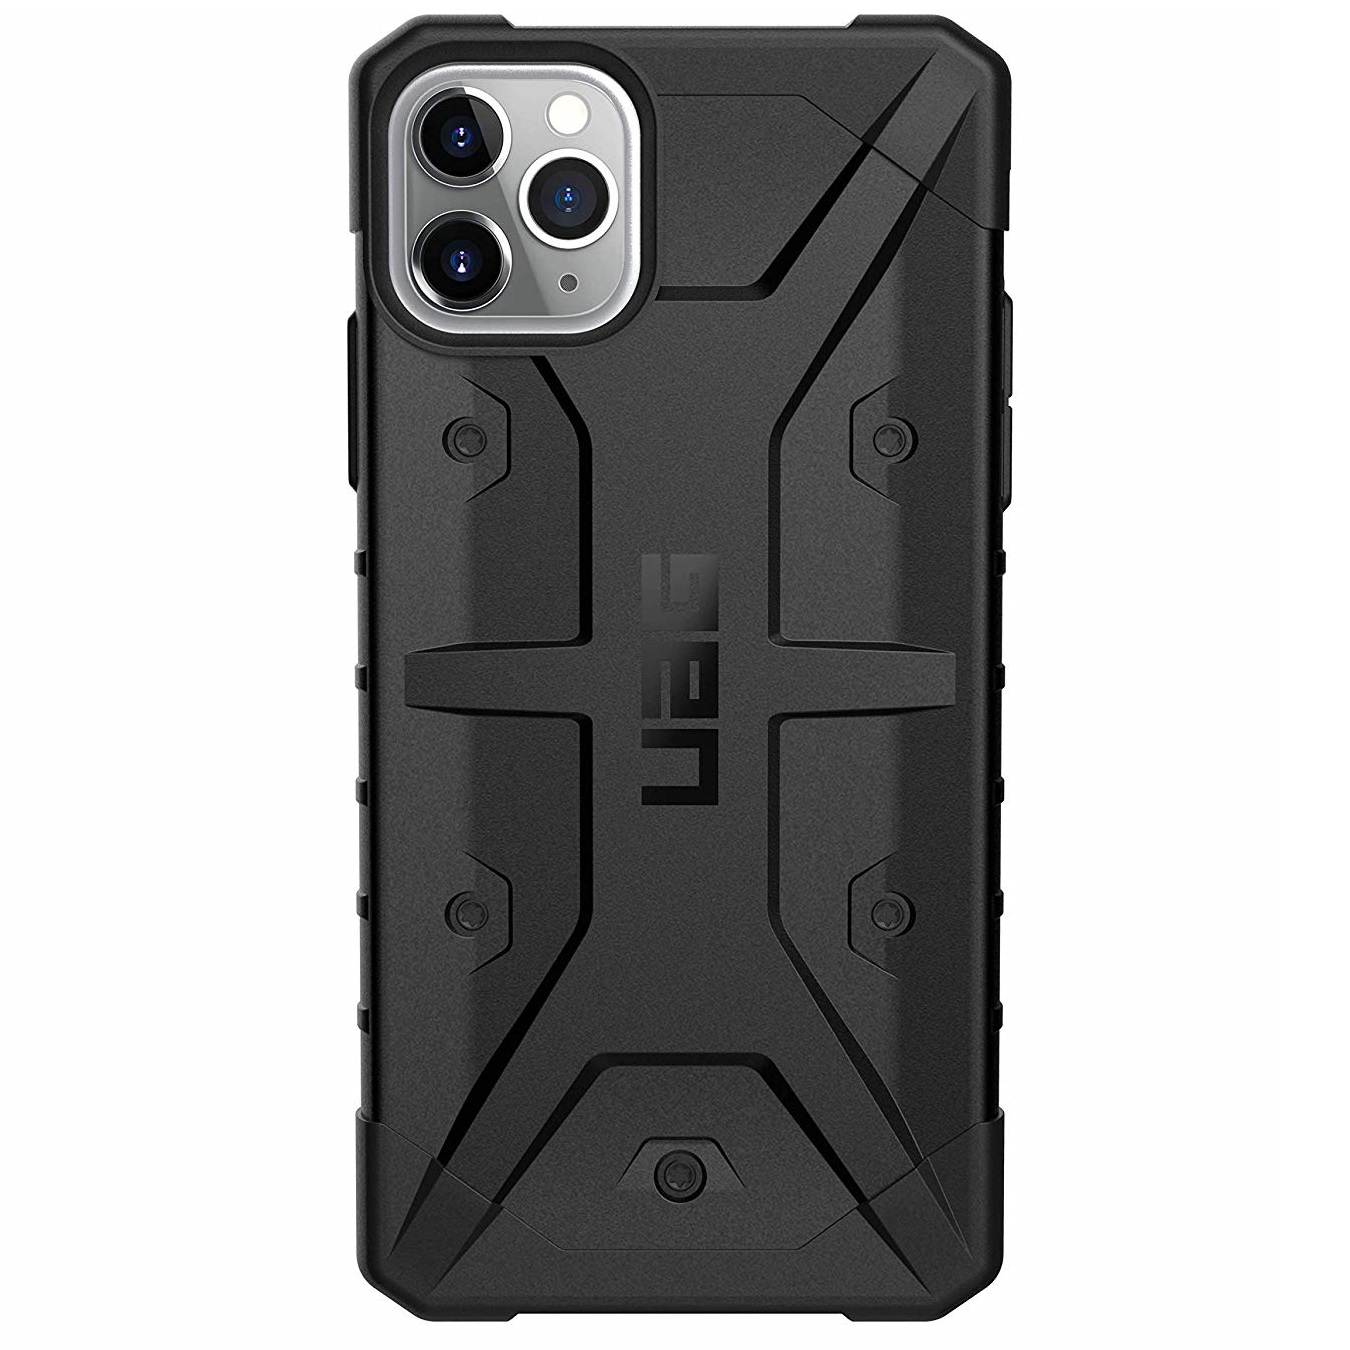 Противоударный защитный чехол UAG Pathfinder Series Case Black для iPhone 11 Pro Max